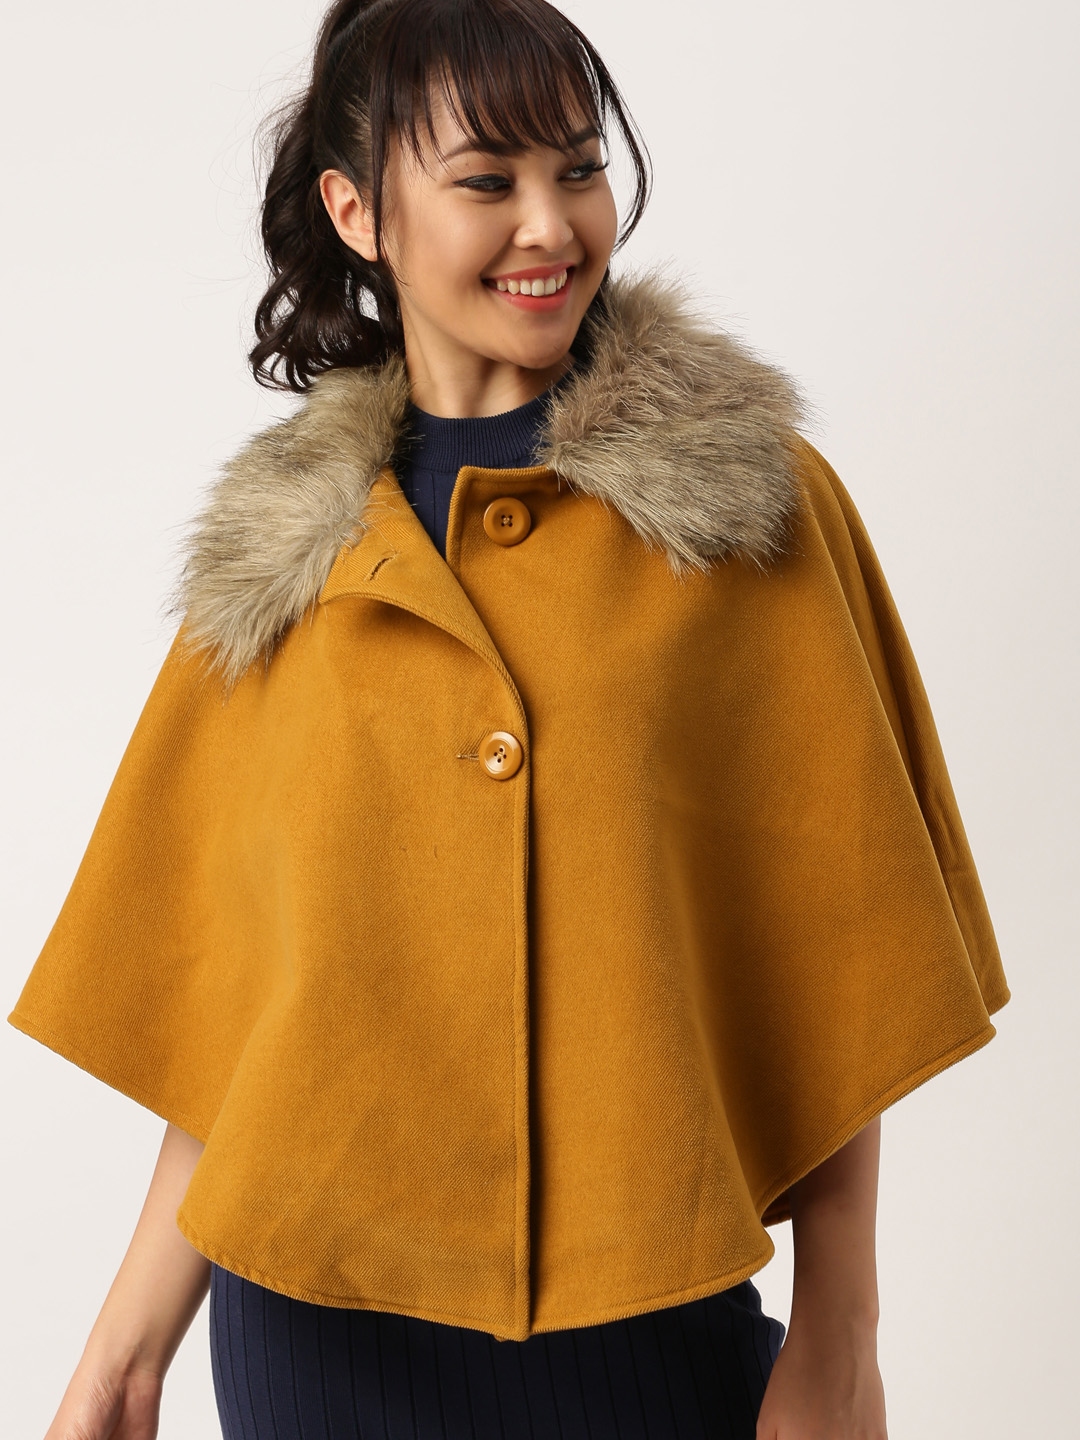 Dressberry cape coat  Cape coat, Trendy coat, Clothes design